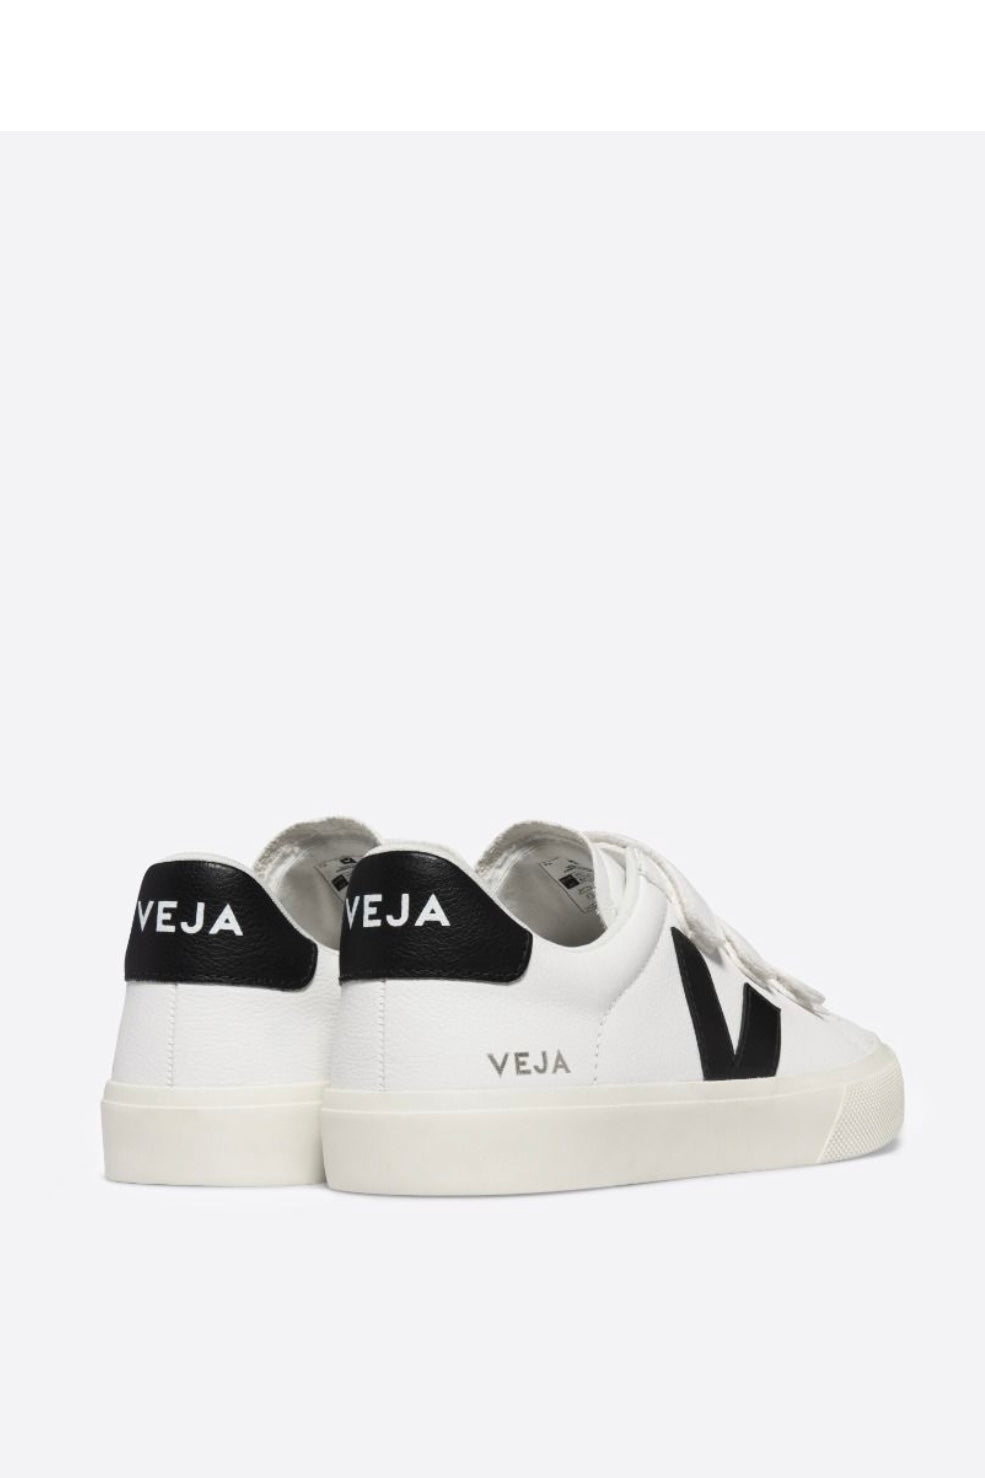 Veja - Recife Sneakers - White/Black